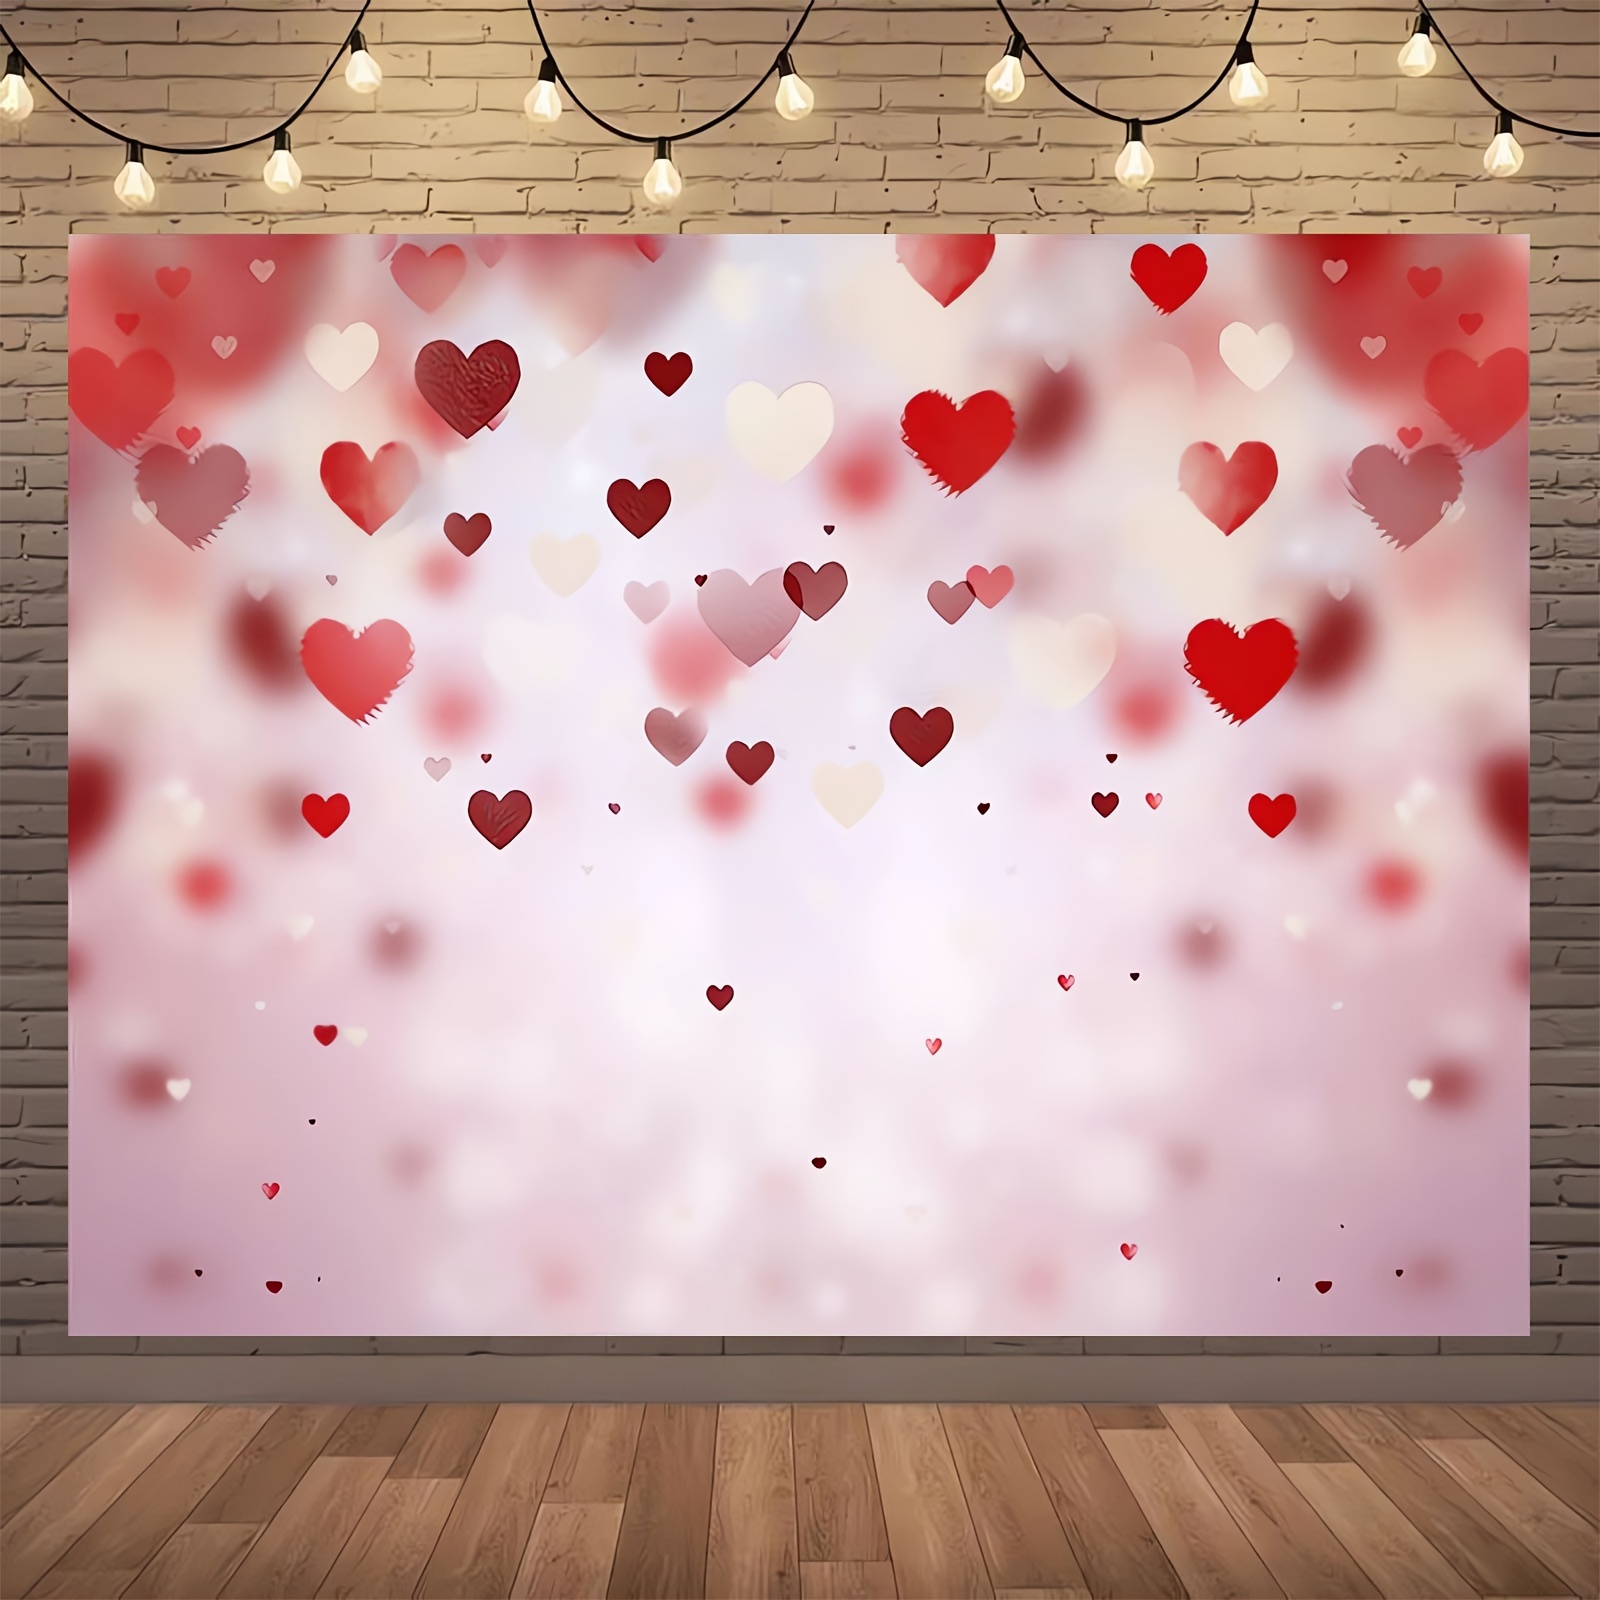 خلفية عيد الحب باللون الأحمر مزينة بقلب لتصوير الفيديو والصور بمقاس 51 بوصة × 59 بوصة / 70.8 بوصة × 90.5 بوصة